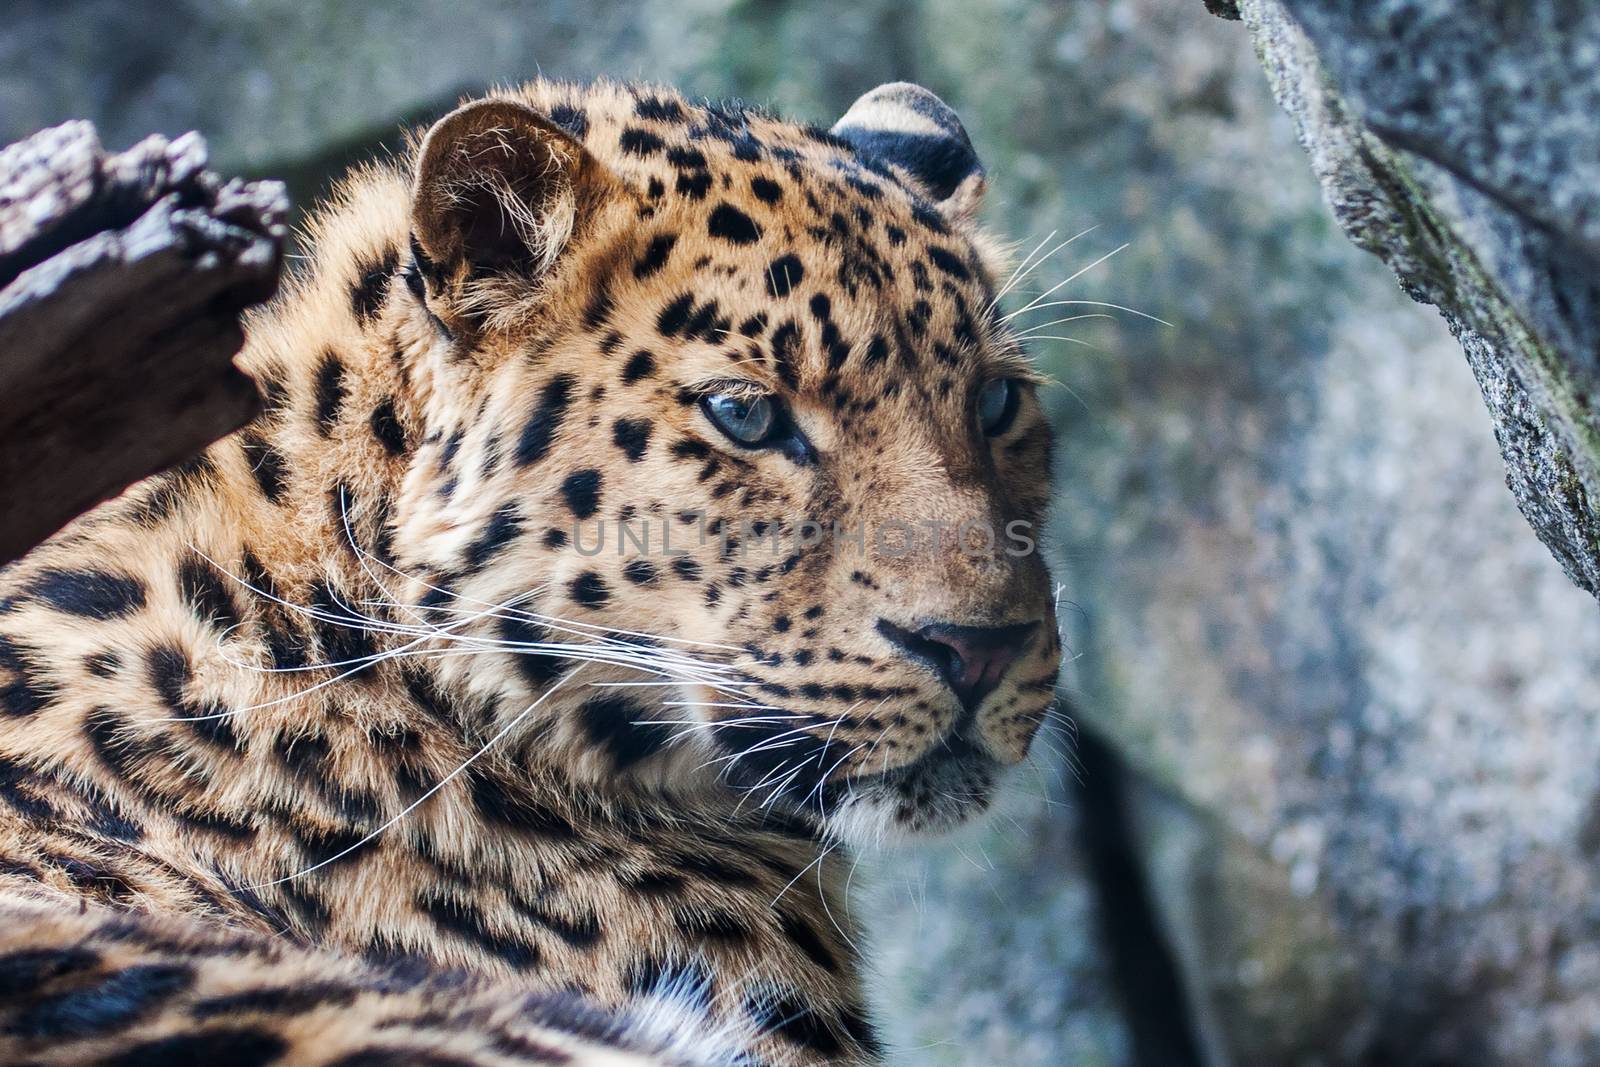 Amur Leopard resting on rock by Coffee999